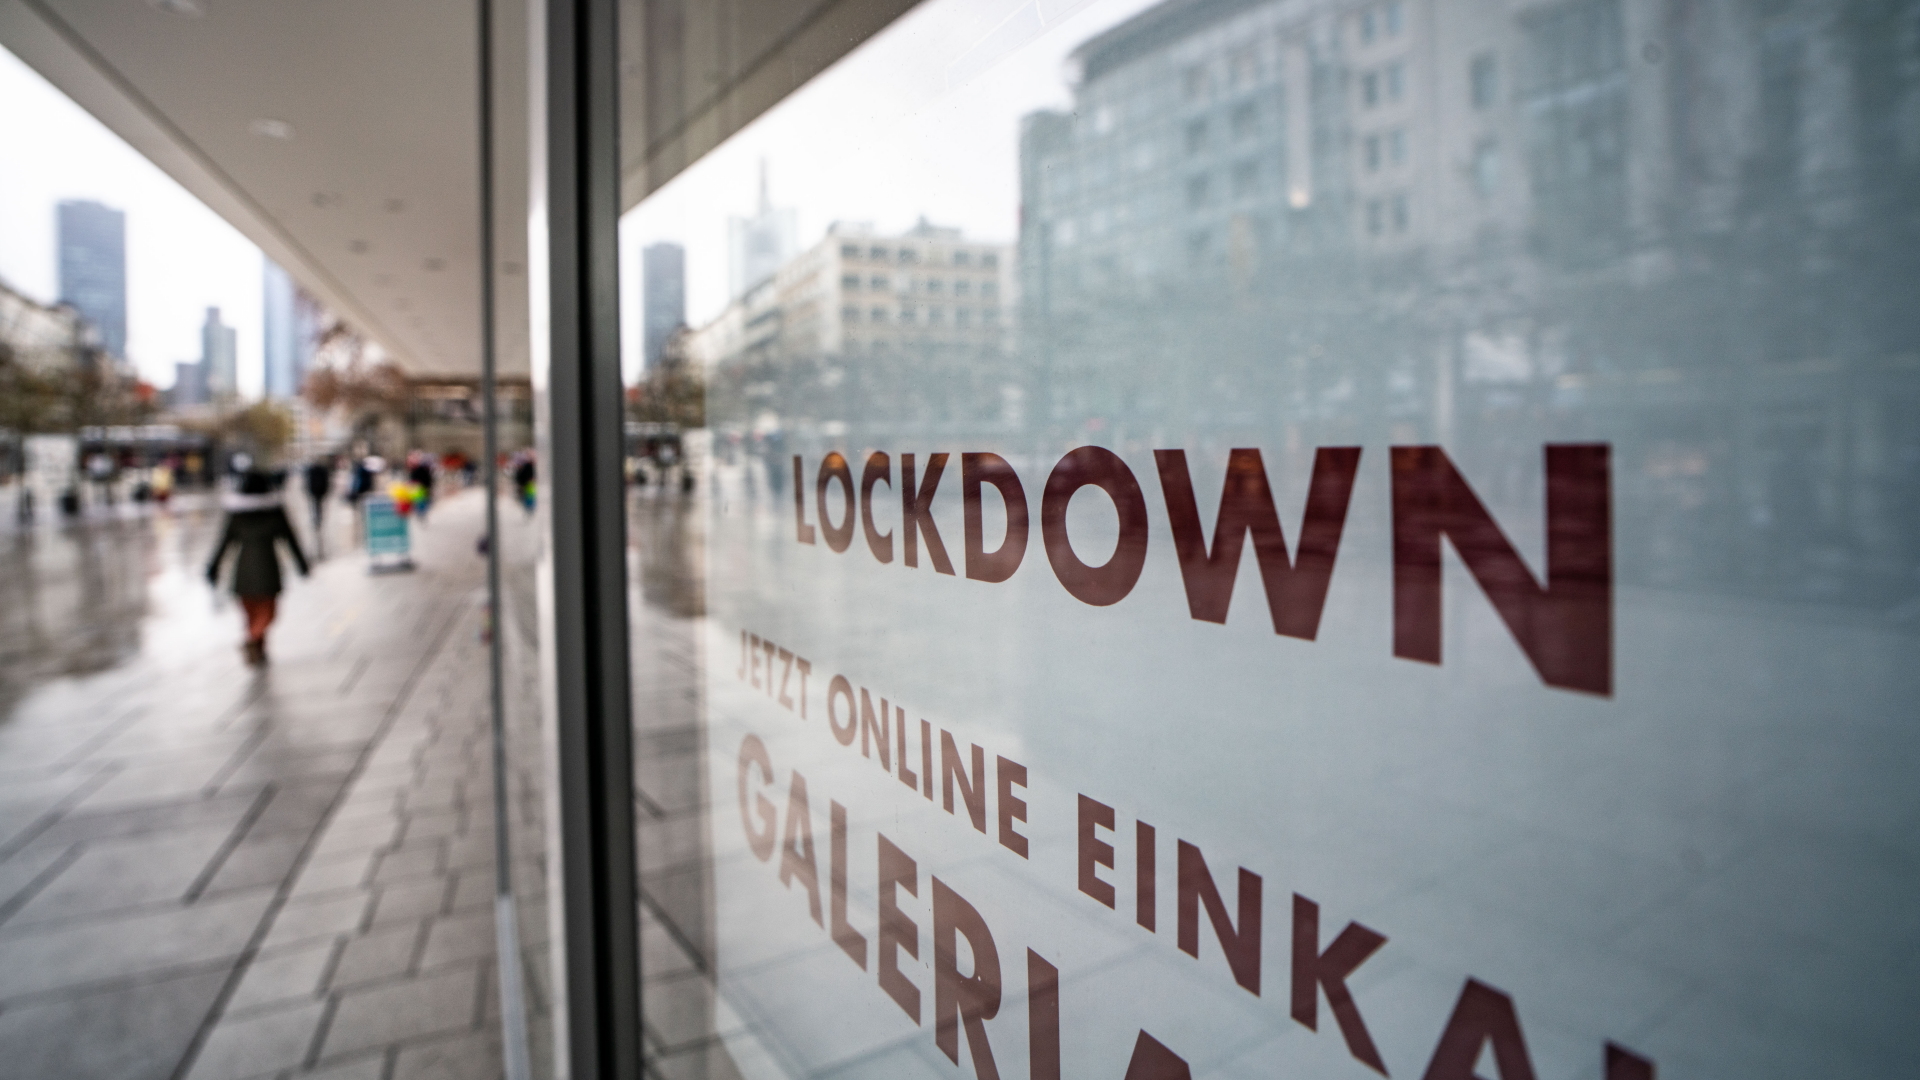 "Lockdown" steht im Schaufenster eines geschlossenen Kaufhauses auf der Frankfurter Zeil, das darunter zum Online-Einkauf rät (Archivbild).